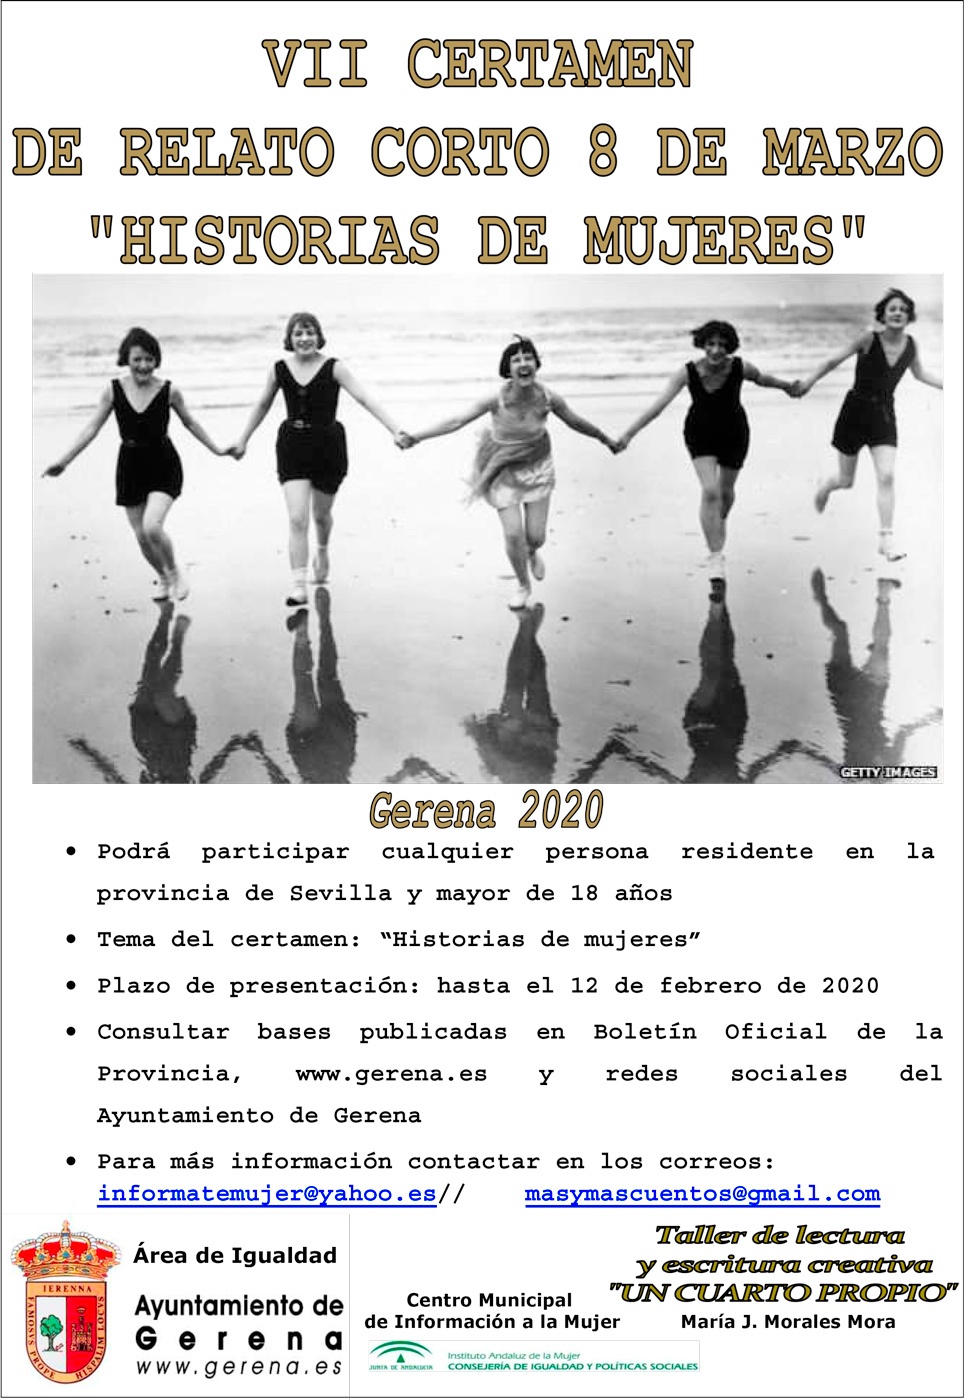 Certamen de Ralatos 8 de Marzo "Historia de Mujeres"